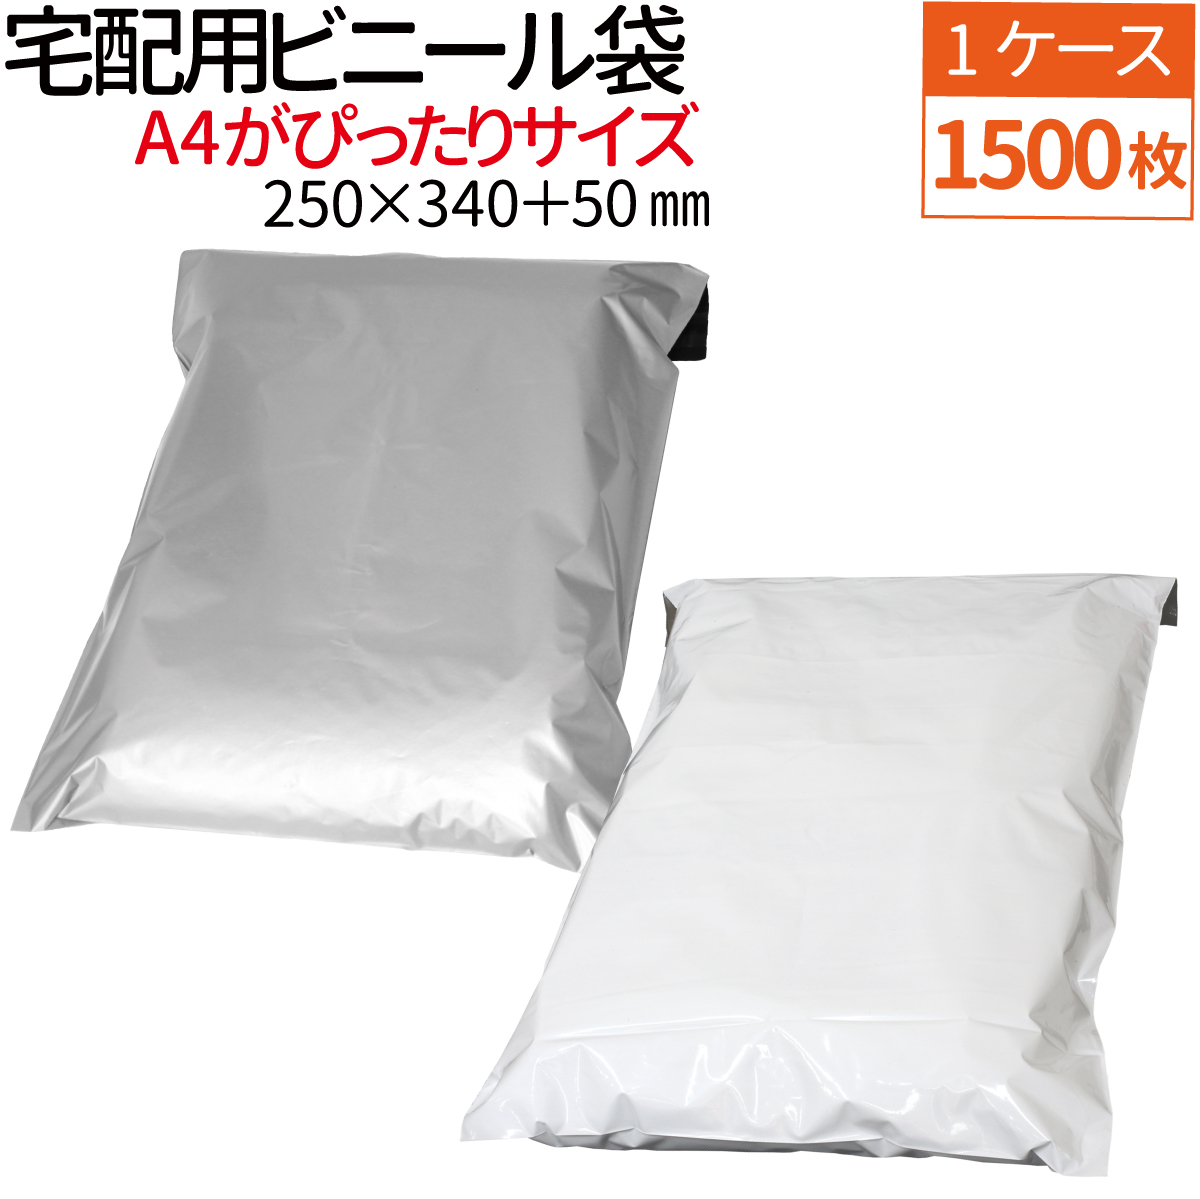 【楽天市場】宅配用ビニール袋 100枚セット 厚み60ミクロン テープ 